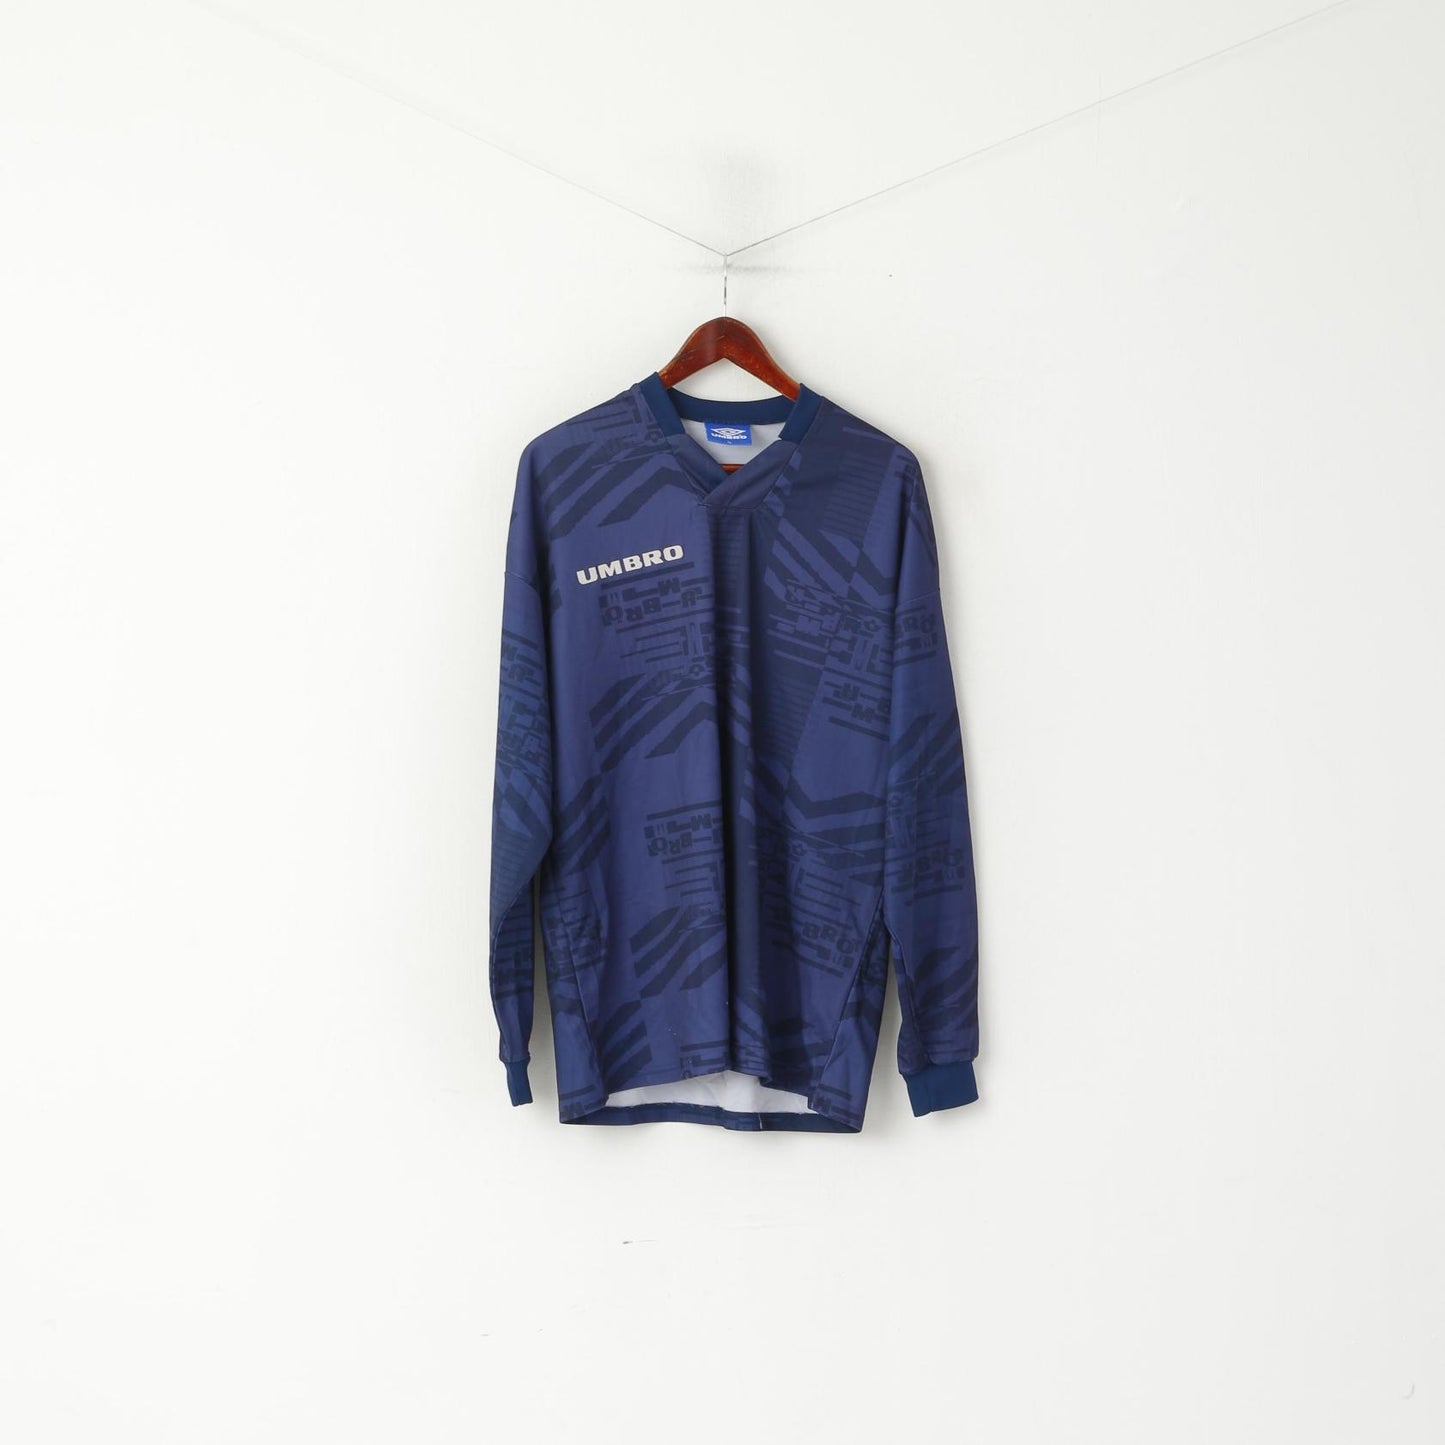 Maglia Umbro da uomo XL a maniche lunghe, maglia da calcio vintage blu scuro, top stampato